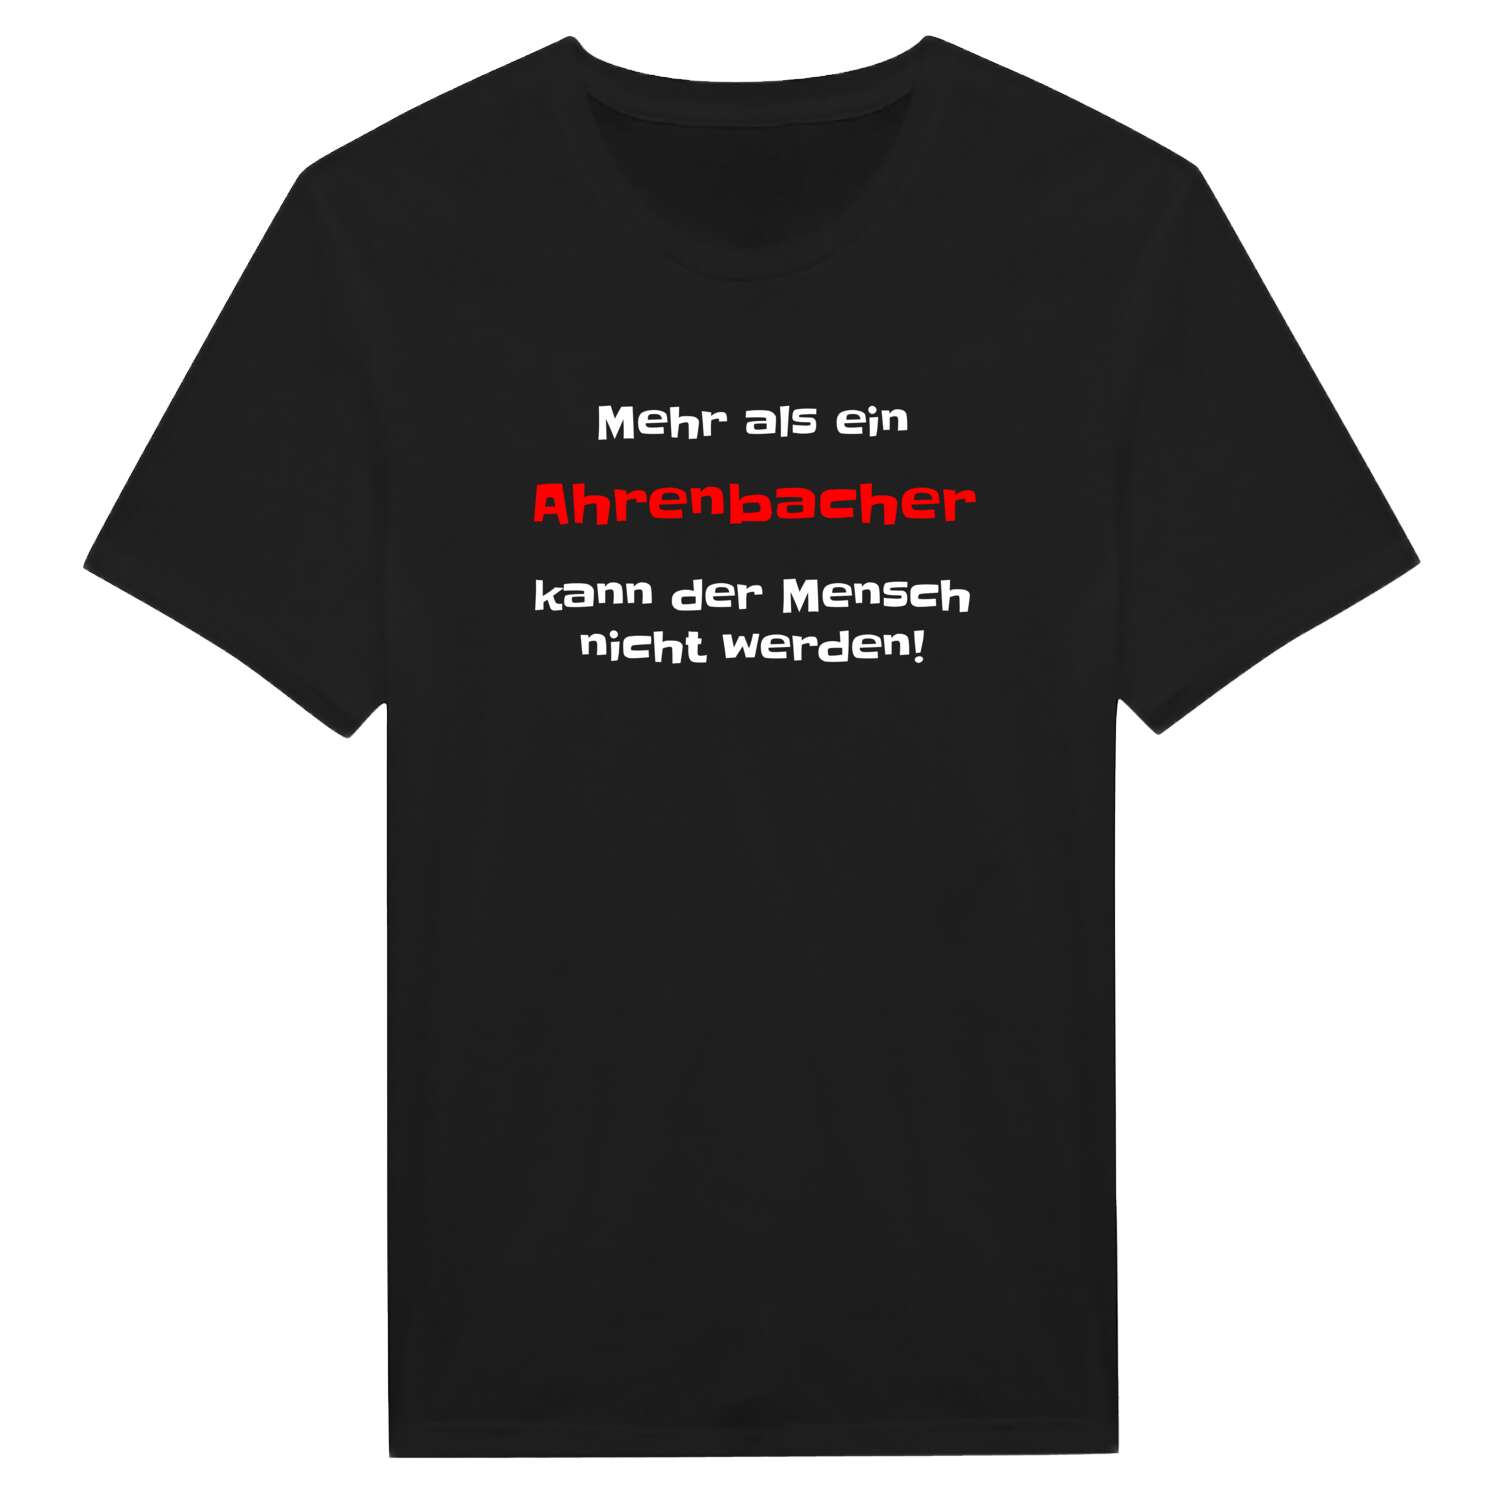 Ahrenbach T-Shirt »Mehr als ein«